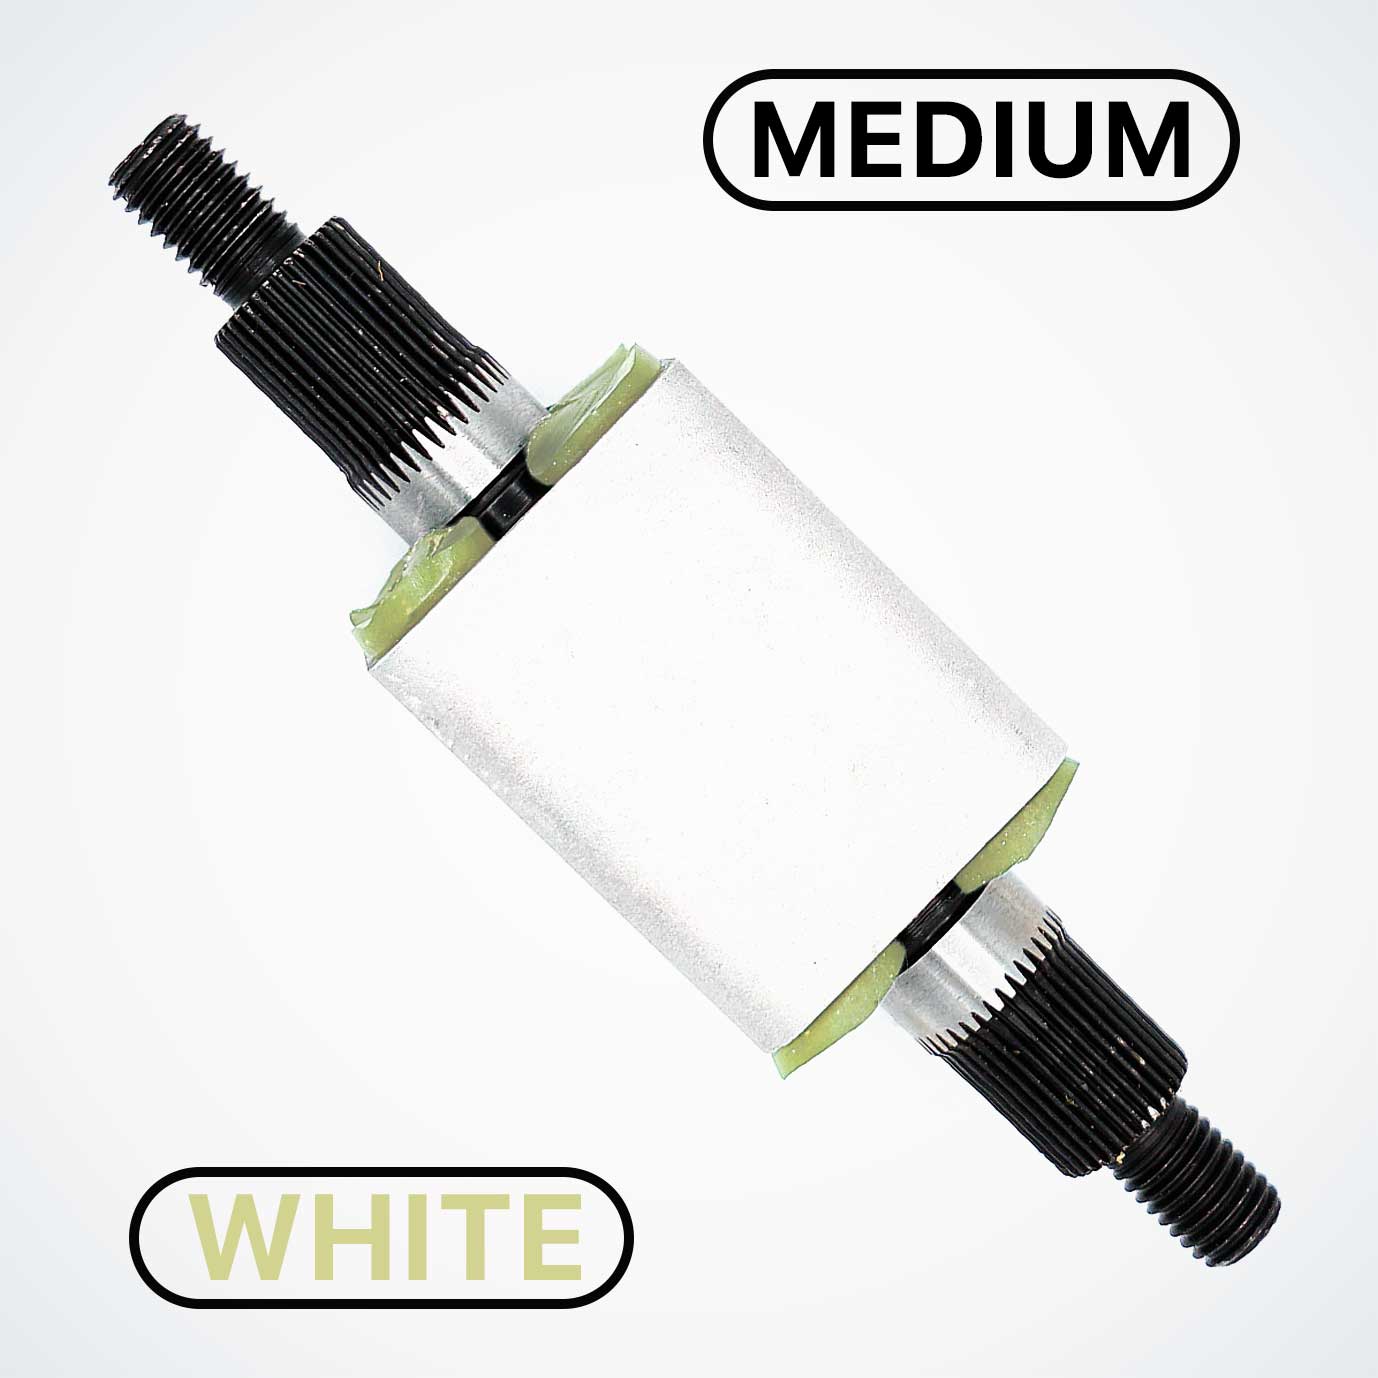 Suspension Cartridge for Dualtron, White, Medium